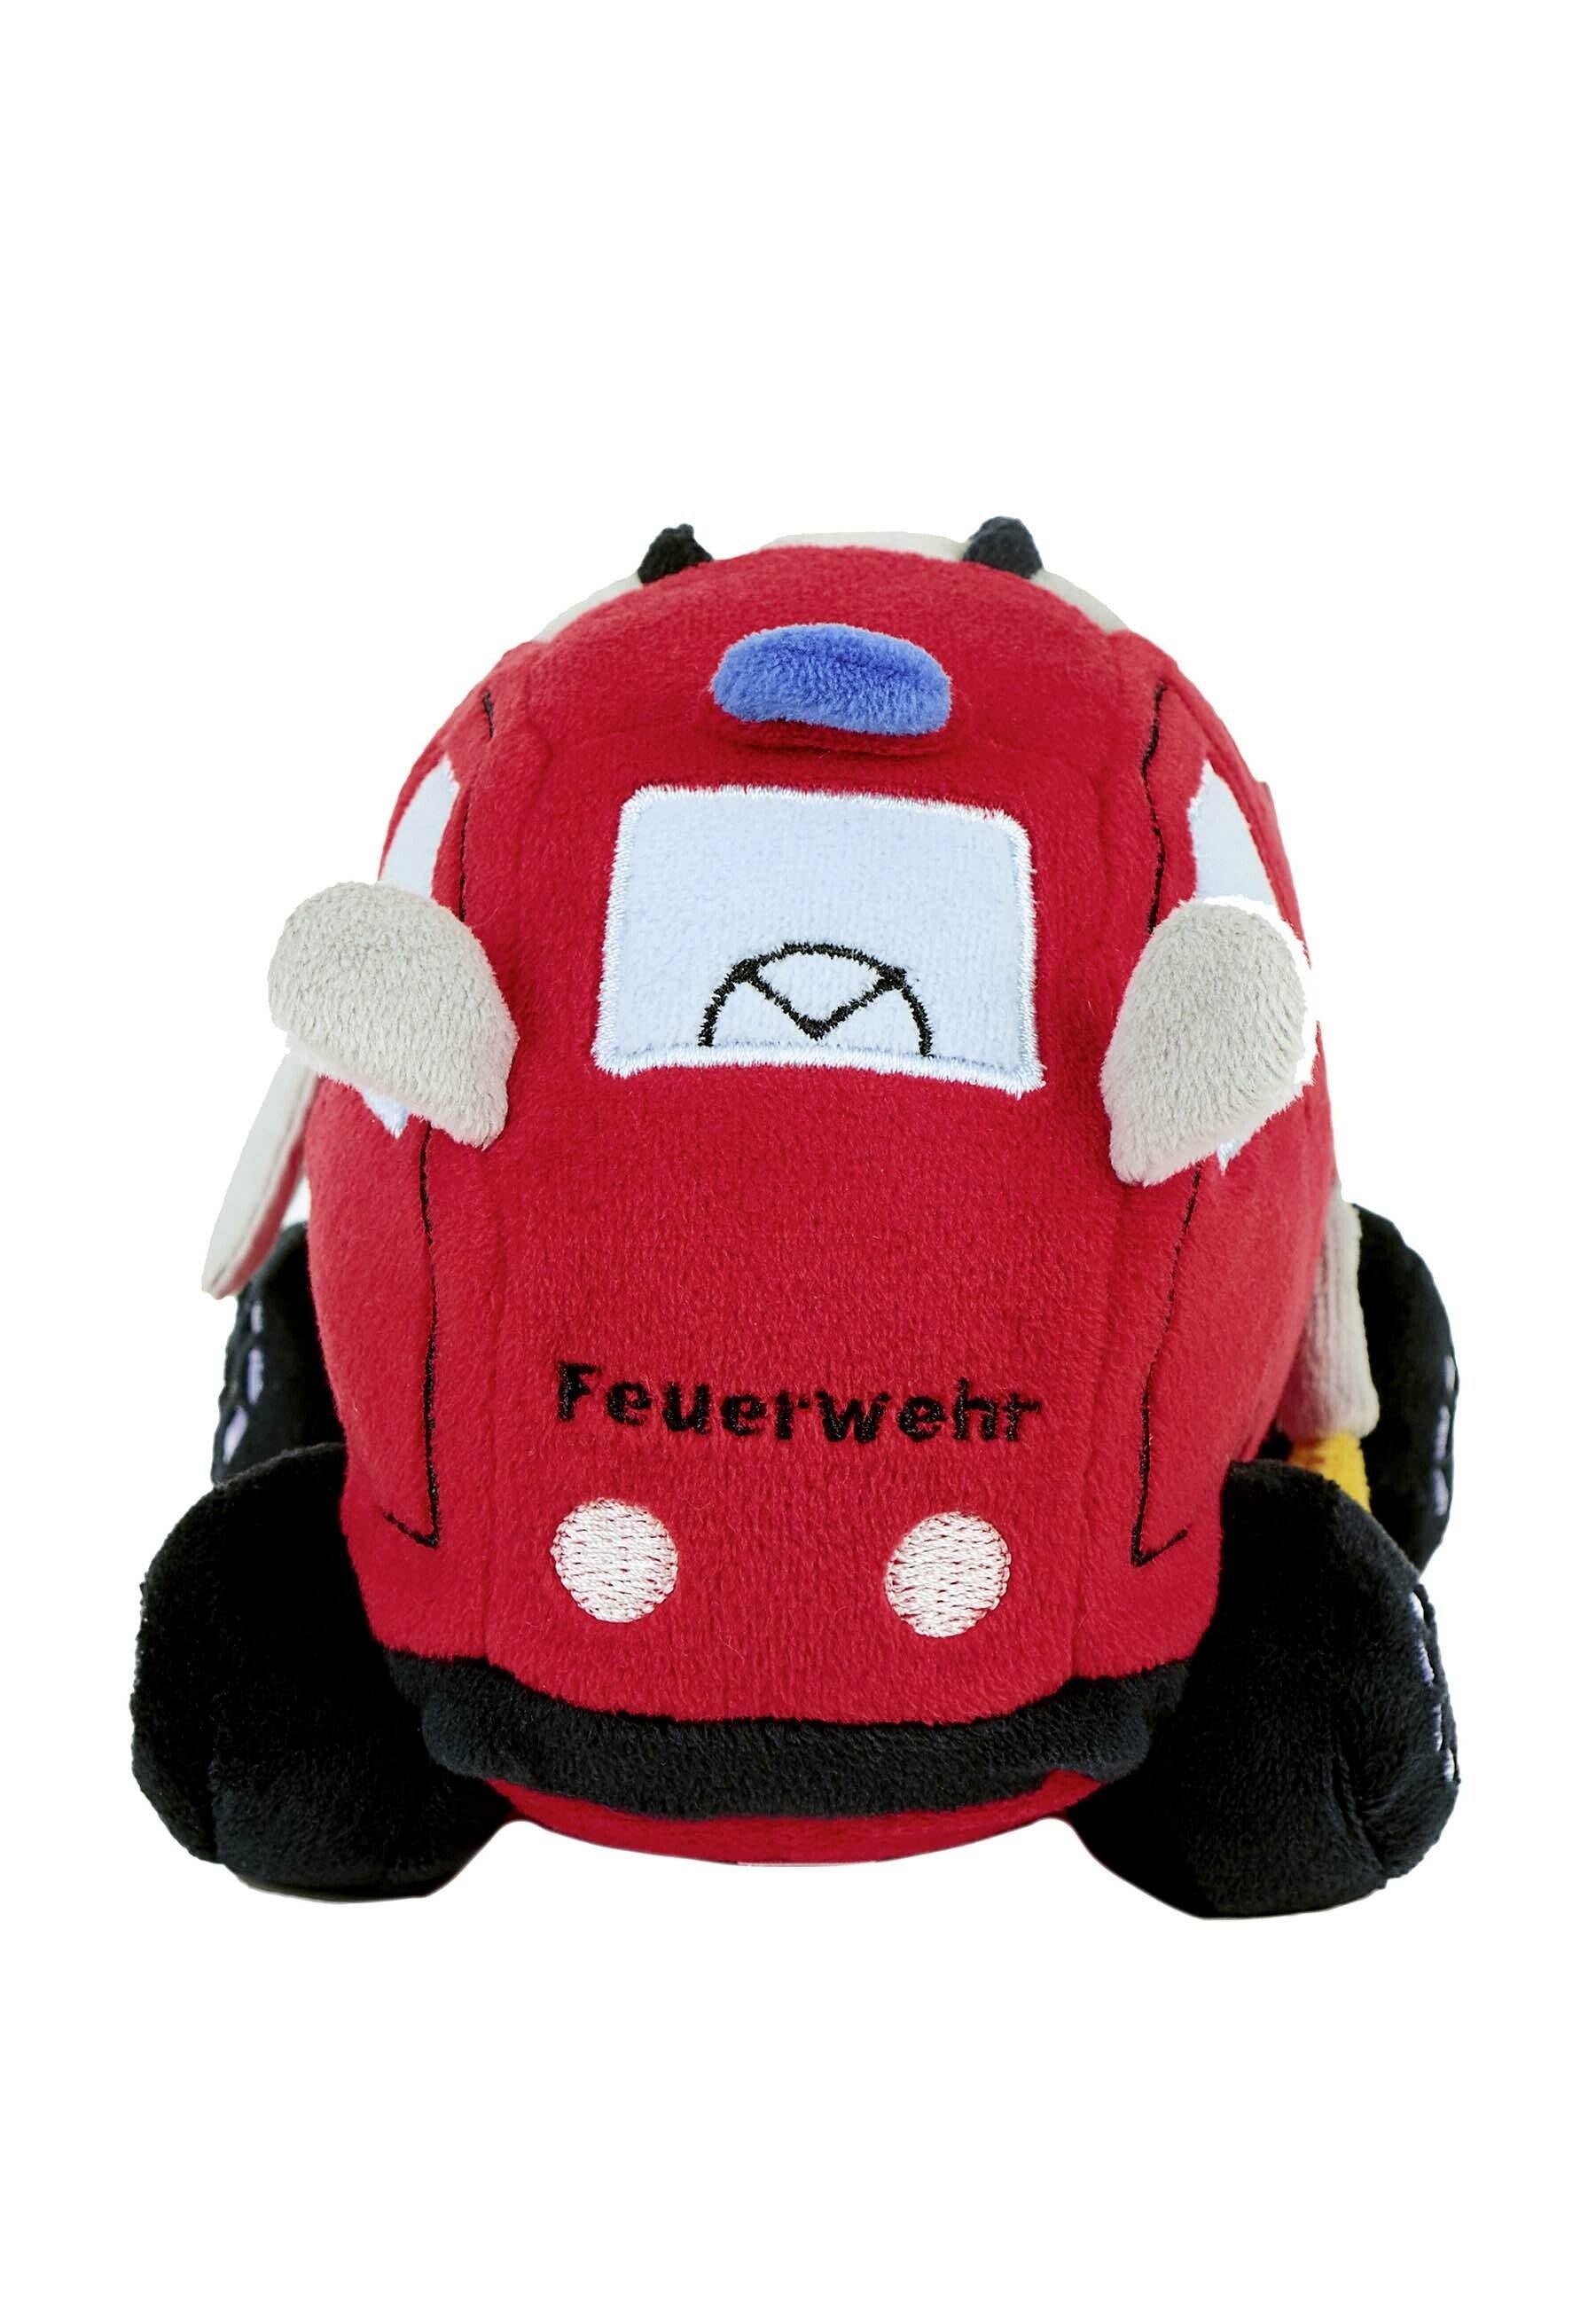 Funktions-Spielzeug Feuerwehr - Sterntaler GmbH